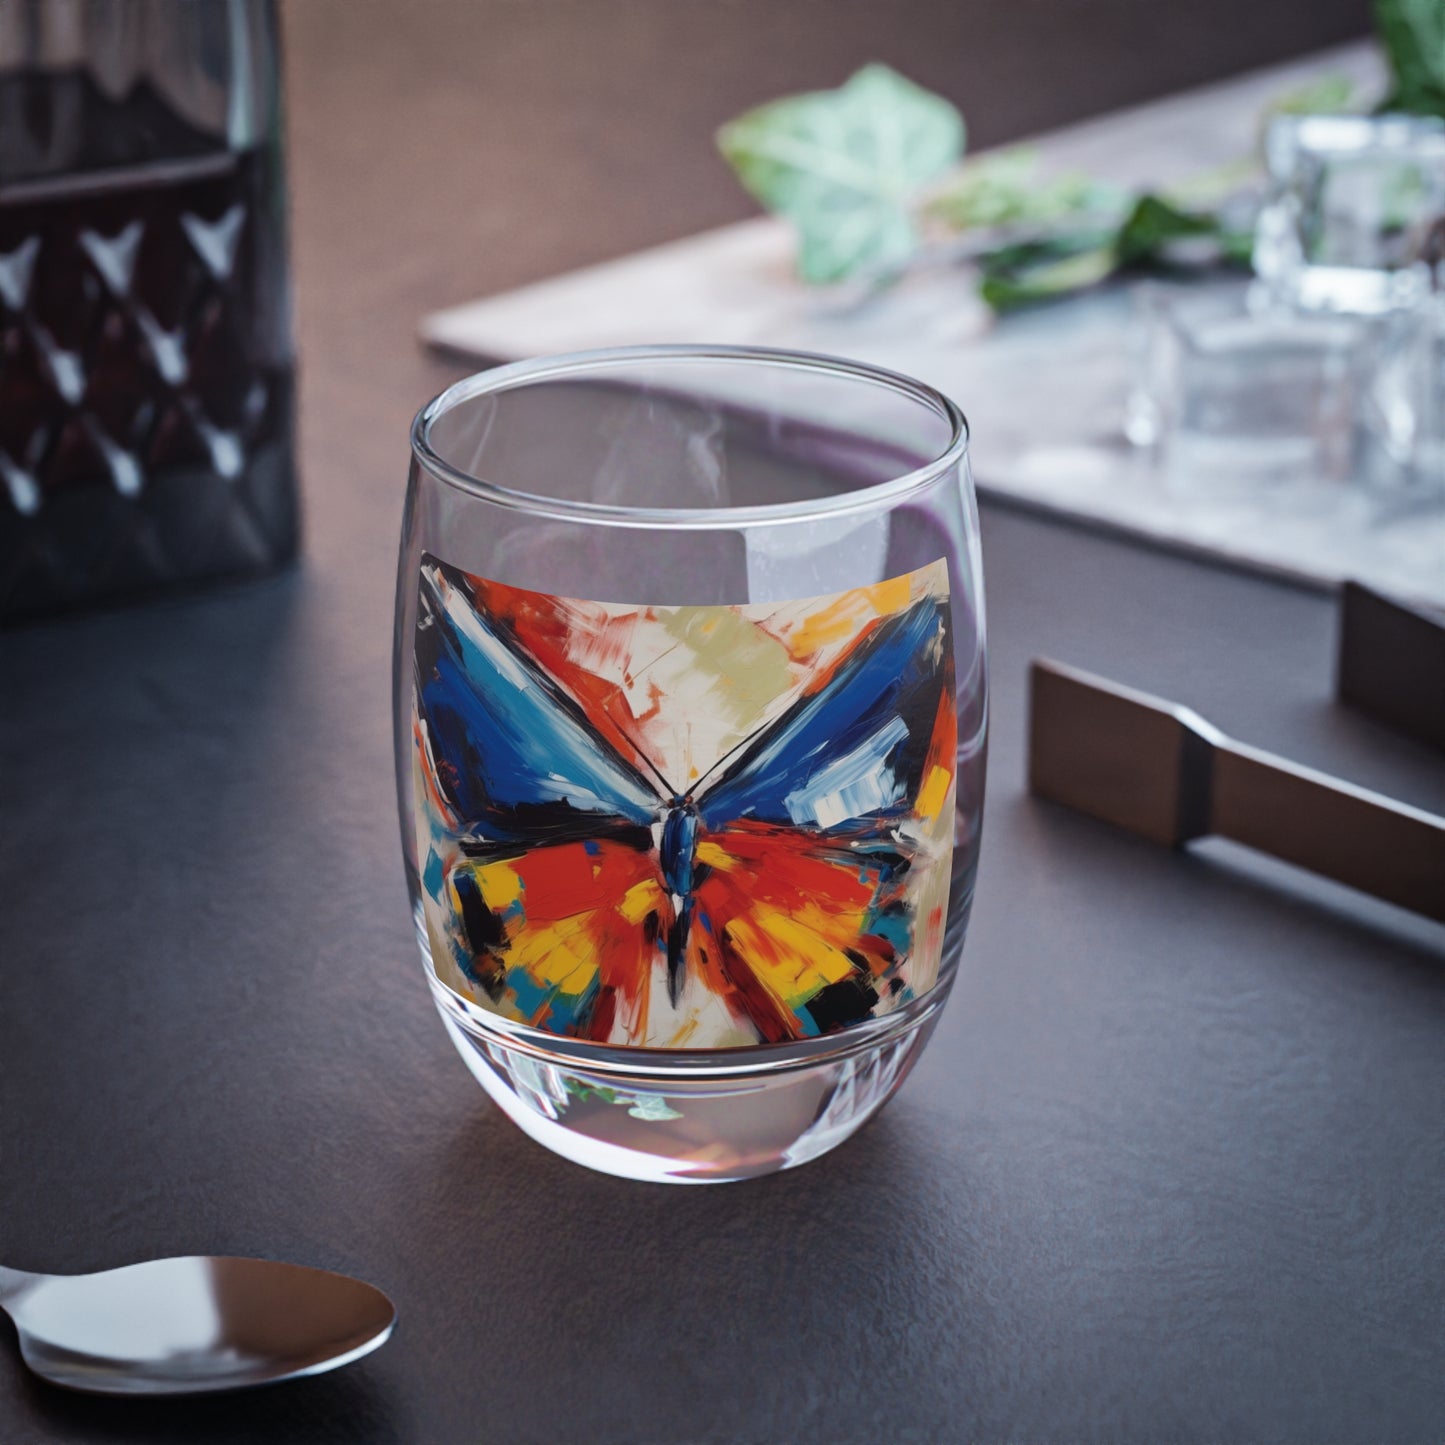 Brush Strokes of Butterfly Splendor: Whiskey Glass for Artistic Inspiration